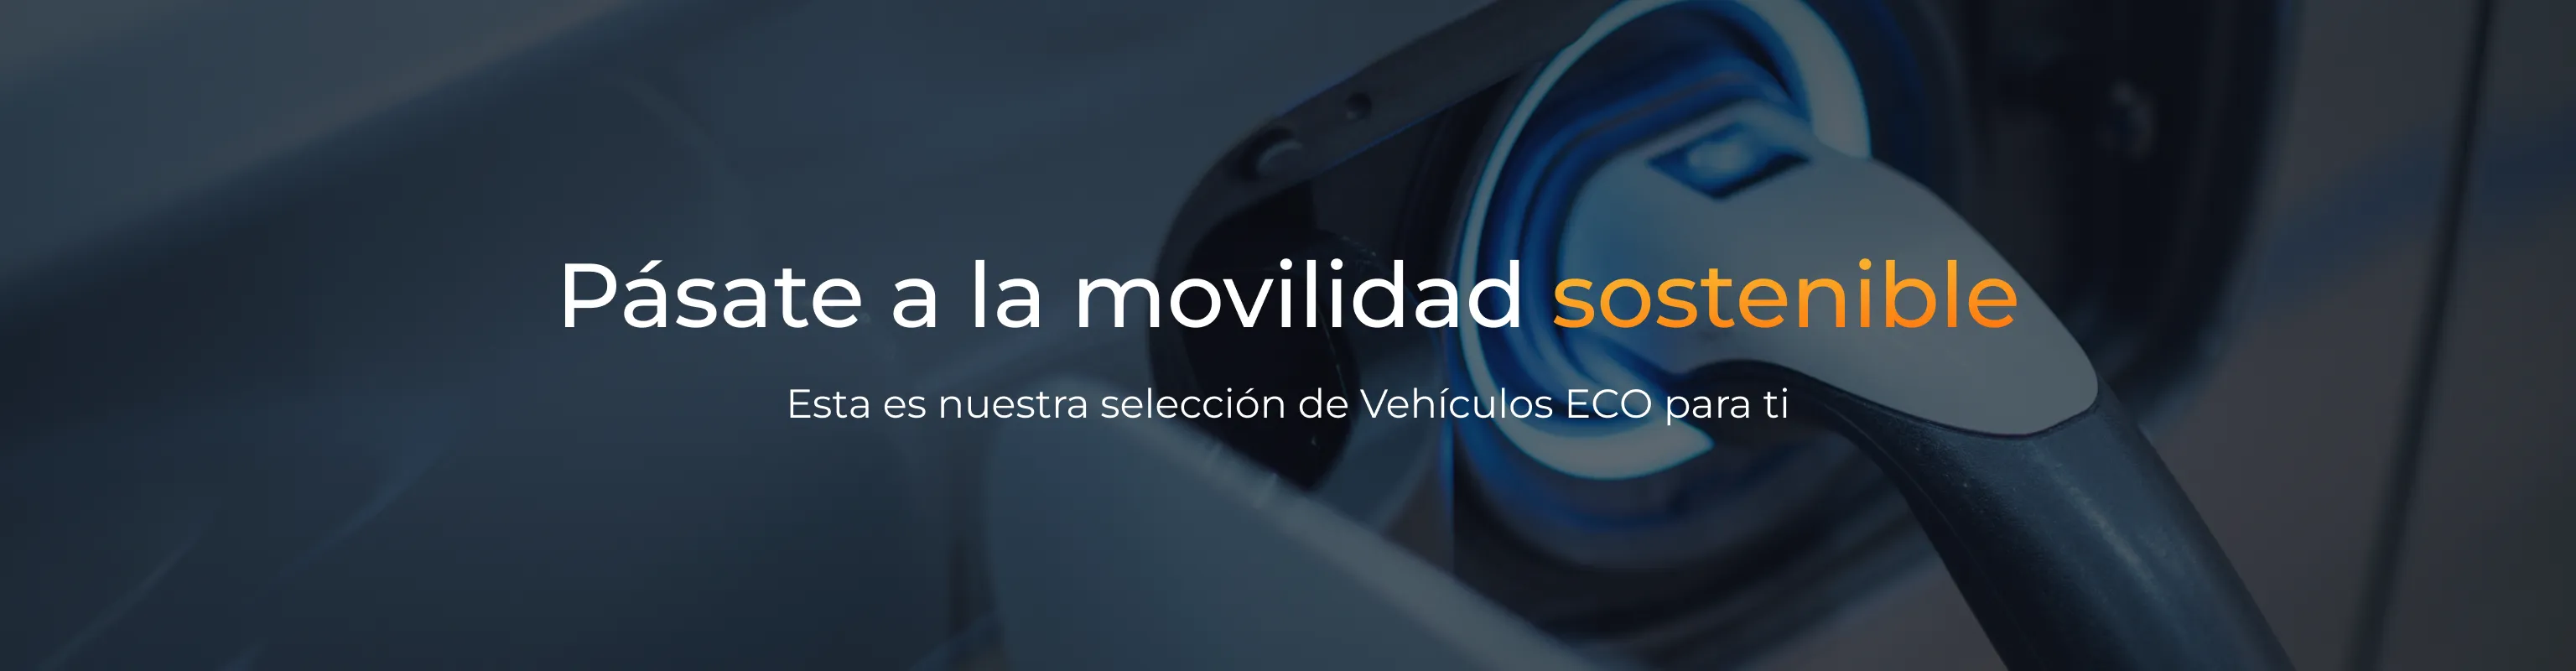 Vehículos Eco banner - Mobilidad Sostenible